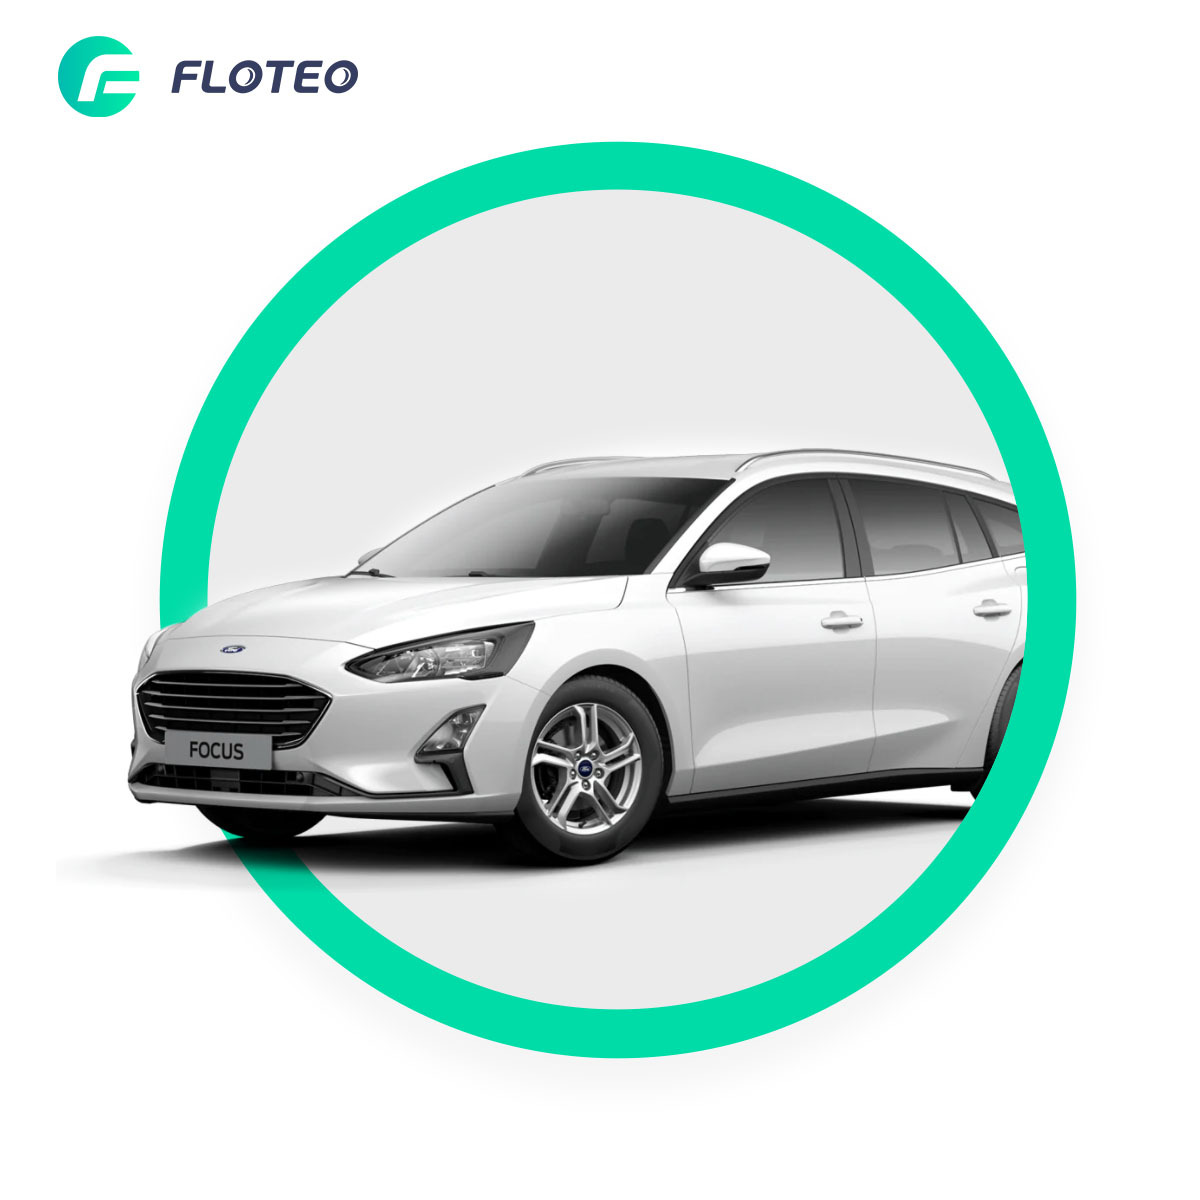 Ford Focus Kombi wynajem długoterminowy Floteo